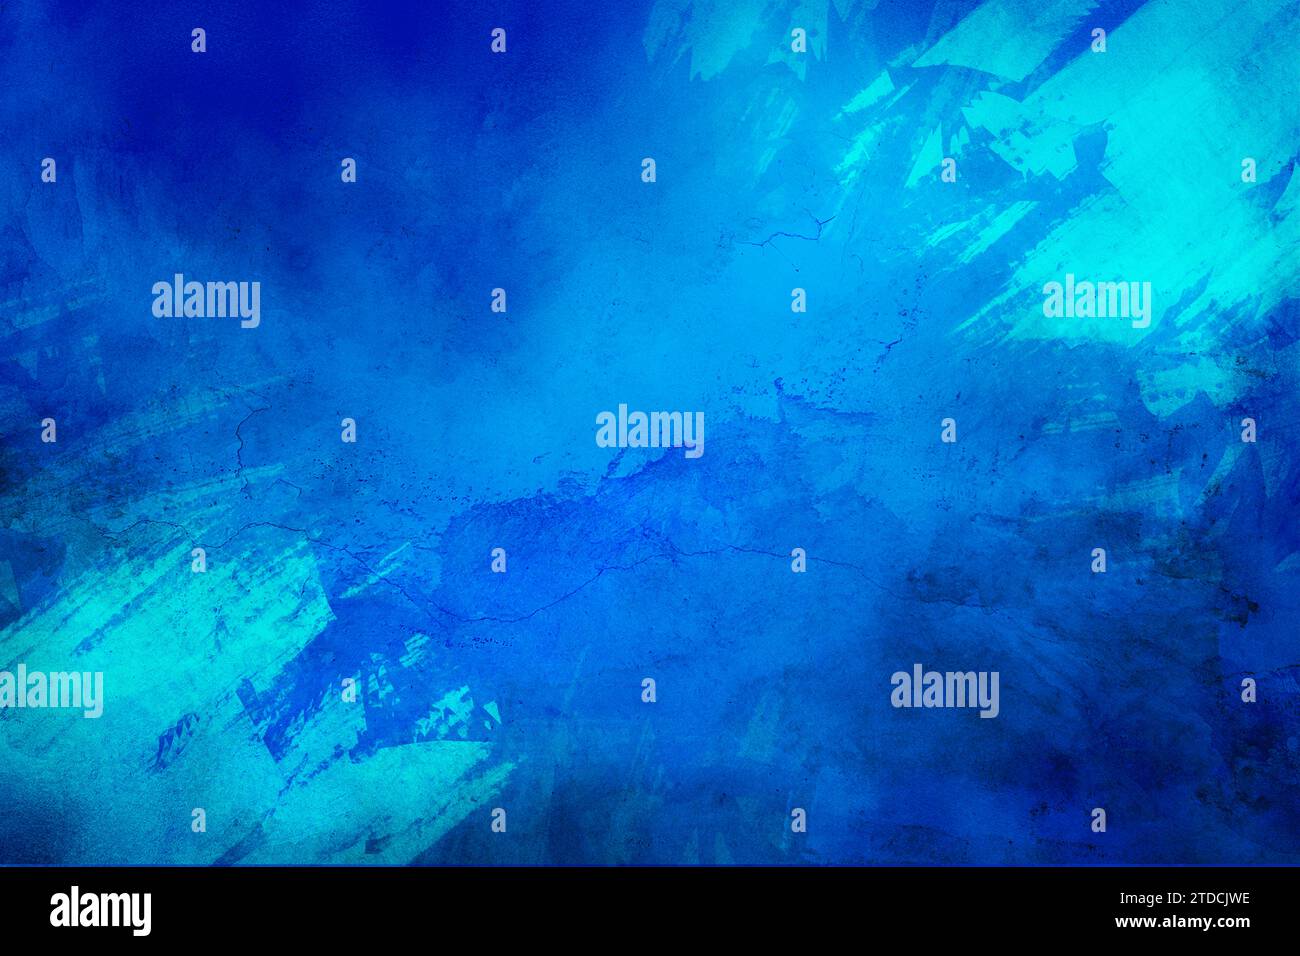 Abstrakter Hintergrund einer schäbigen Betonwandoberfläche mit blauer Glanzfarbe und verwitterten Teilen. Textur der Schriftfarbe. Tragen von Linoldruck Stockfoto